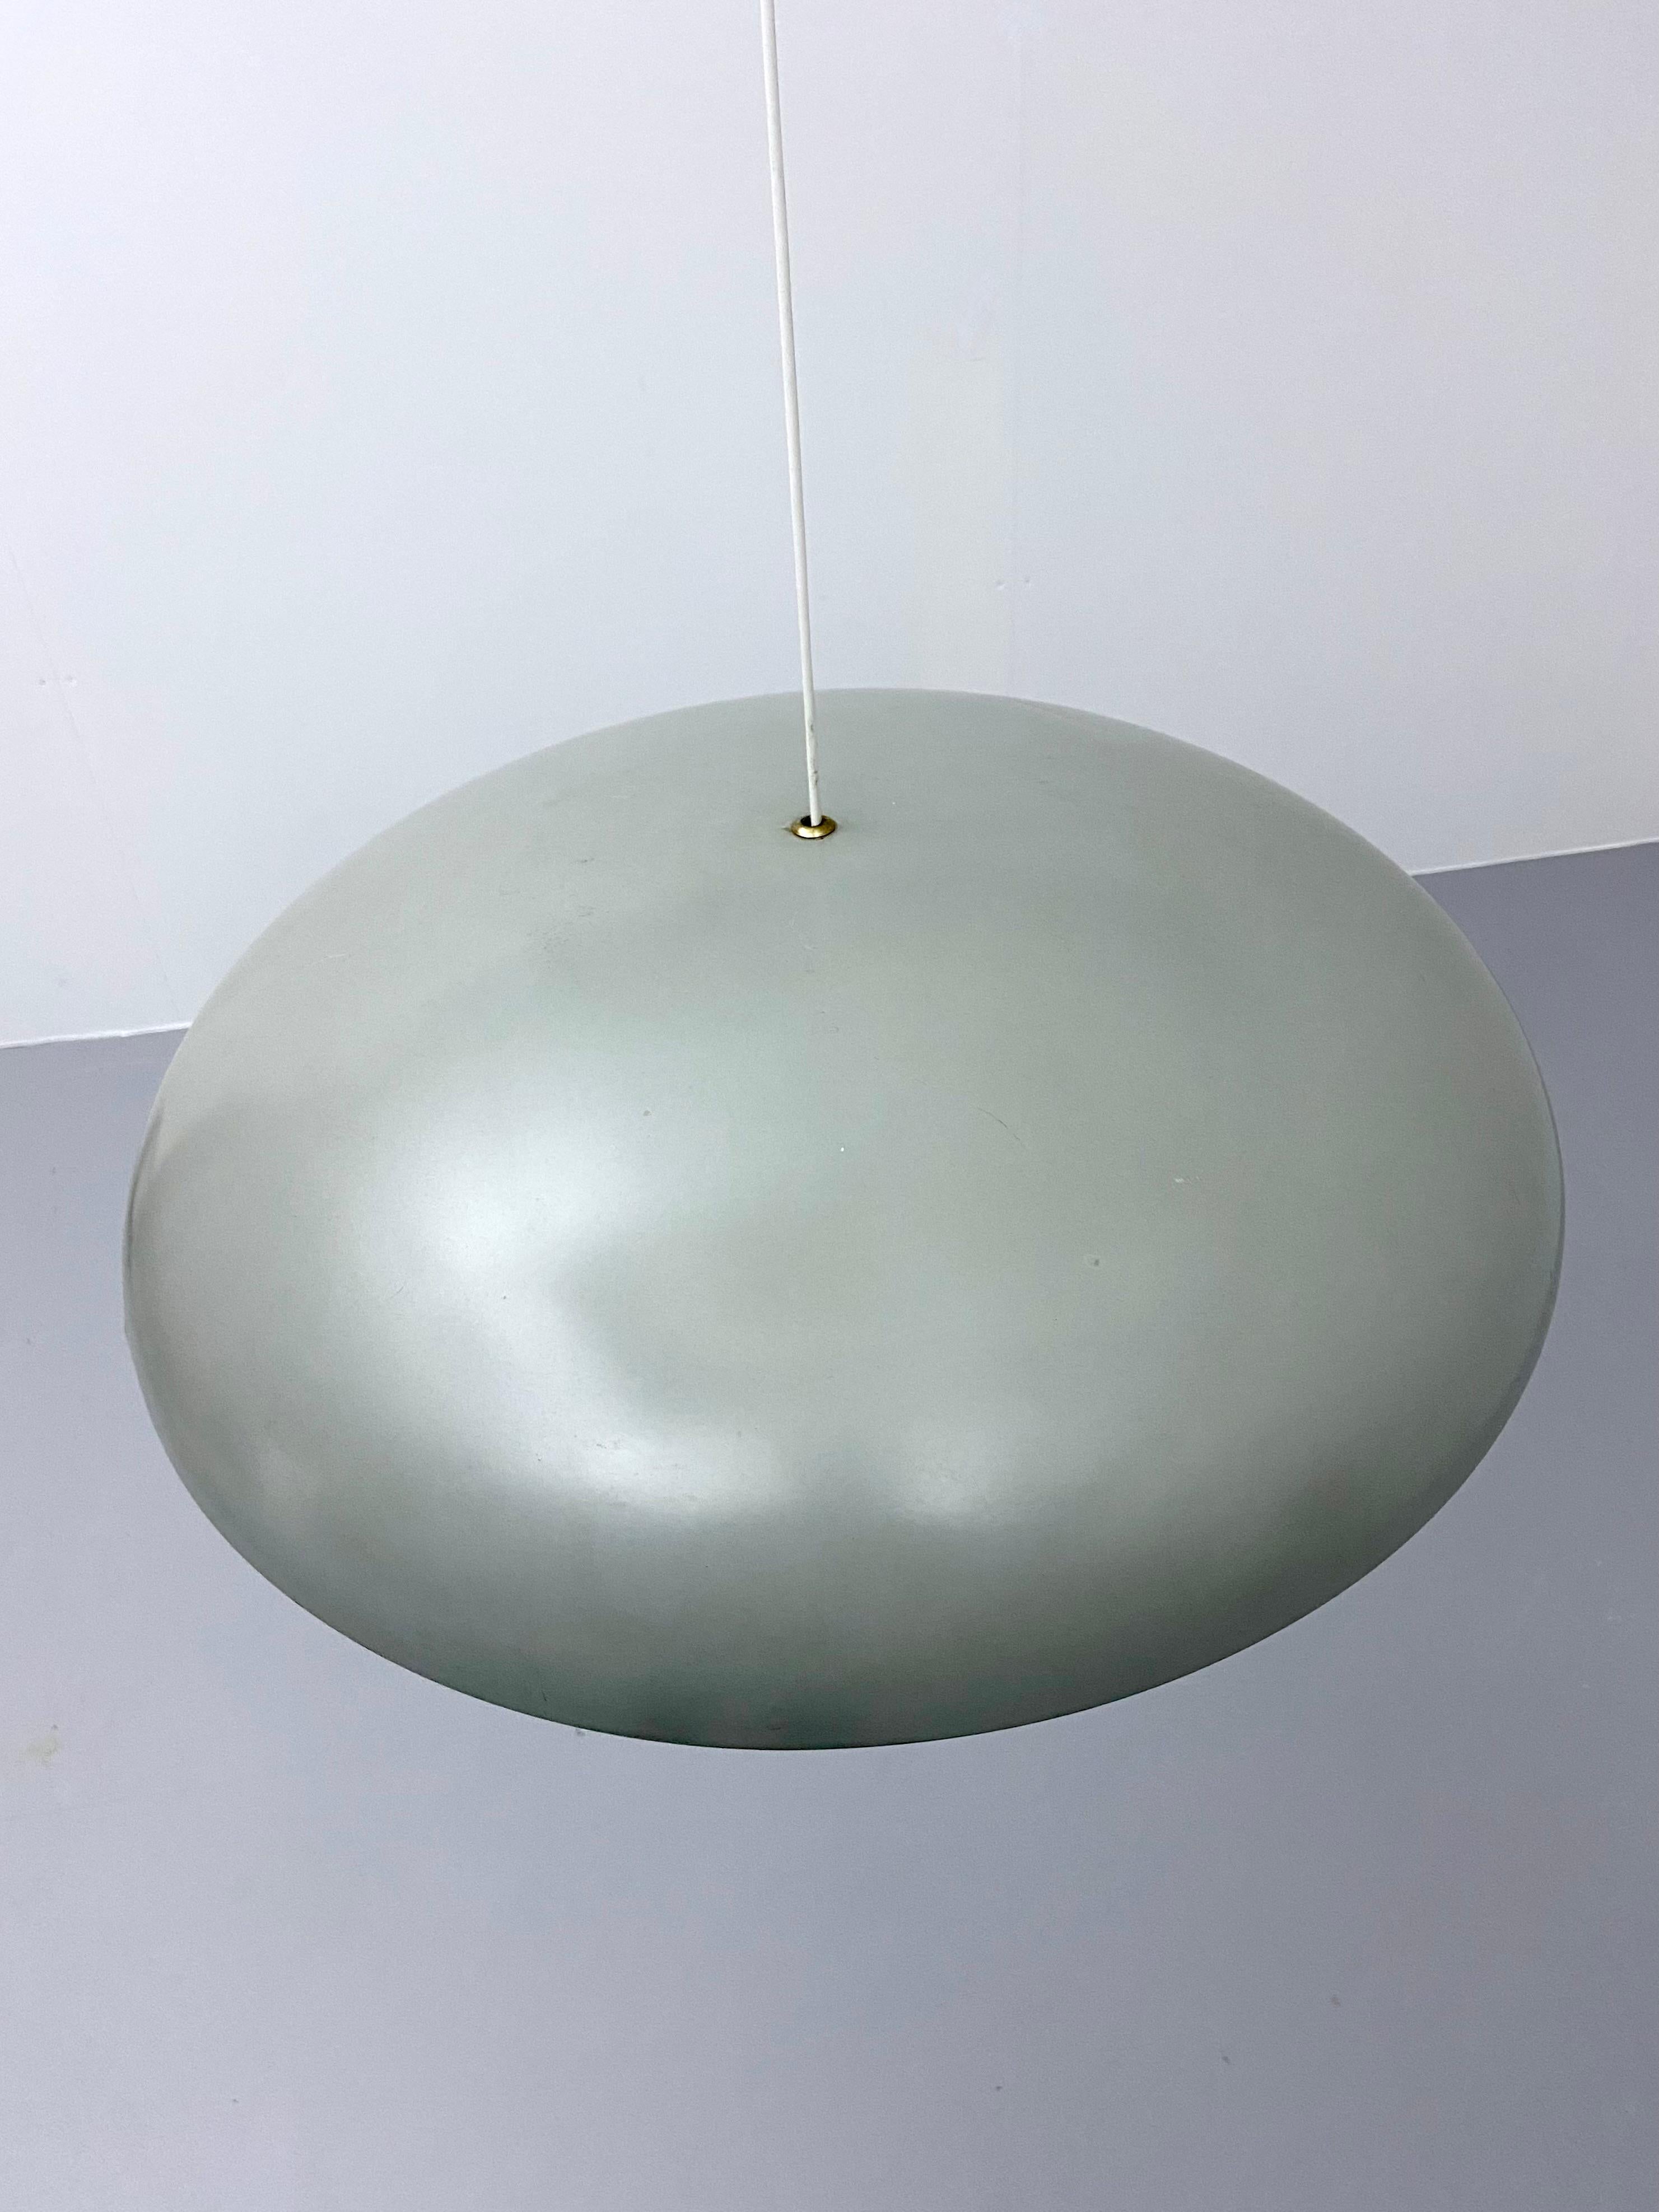 Conçue en 1967 par Vilhelm Wohlert et Jørgen Bo pour Louis Poulsen, cette grande suspension est dotée de trois prises intérieures et d'une série d'anneaux diffuseurs pour une lueur vive et chaude. Il est assez grand avec ses 66 cm de diamètre et la